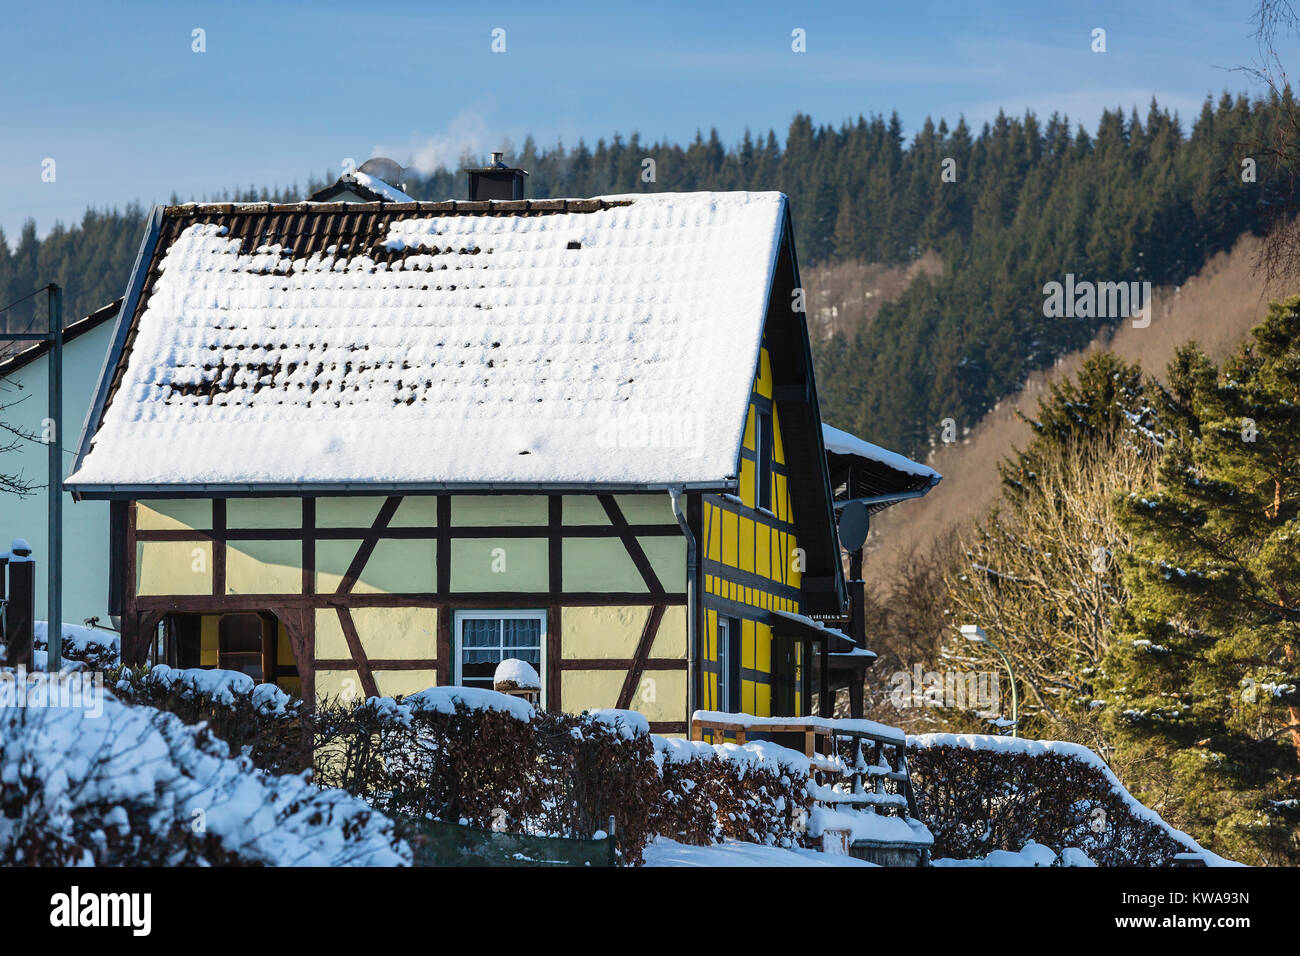 Maison à colombages colorés dans le nord de l'Eifel Monschau Widdau village en hiver, de l'Allemagne. Banque D'Images